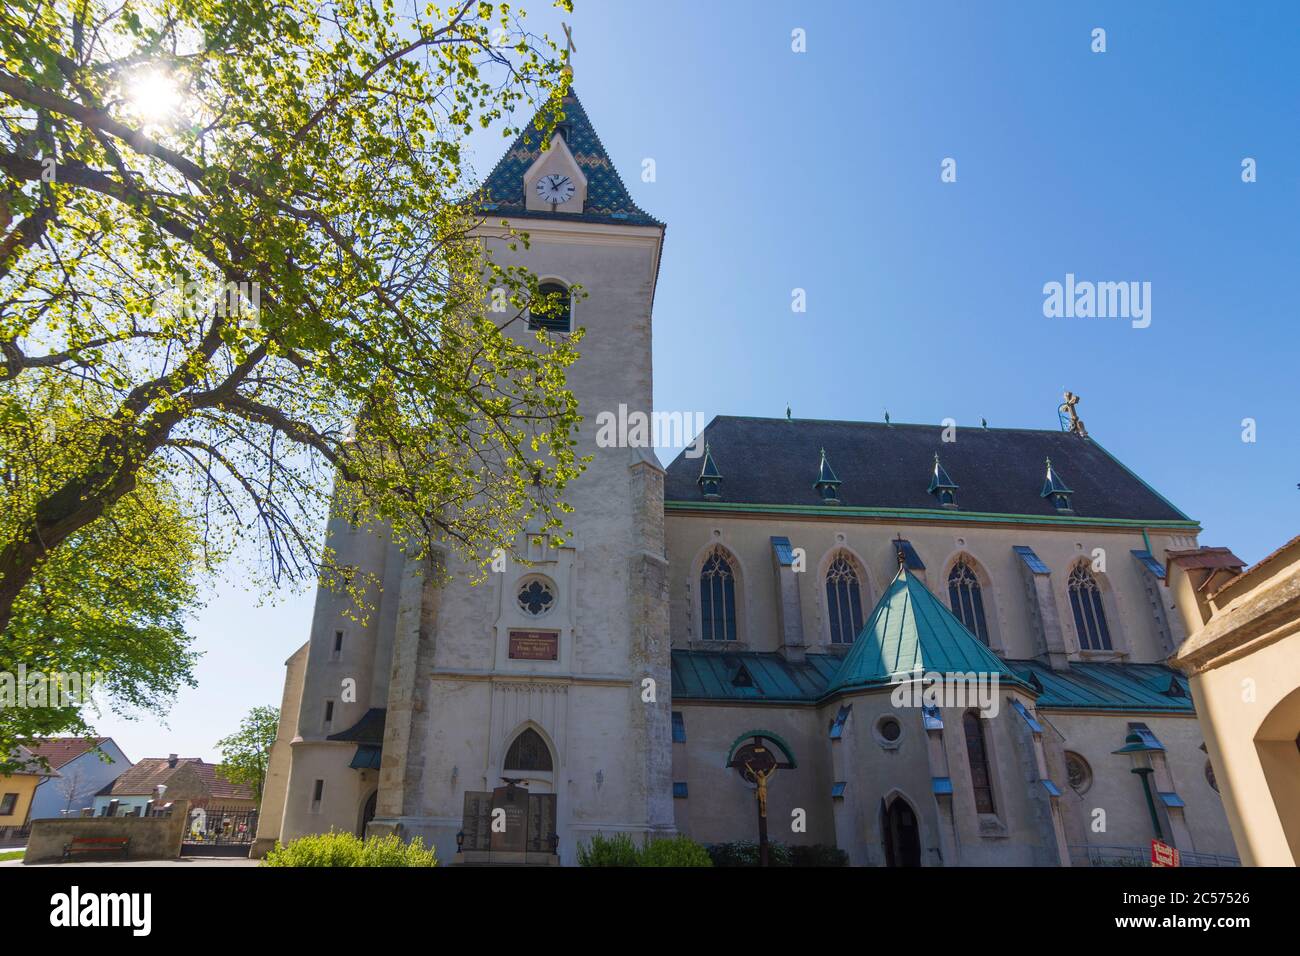 Grossengersdorf, church Grossengersdorf in Weinviertel region, Lower Austria, Austria Stock Photo